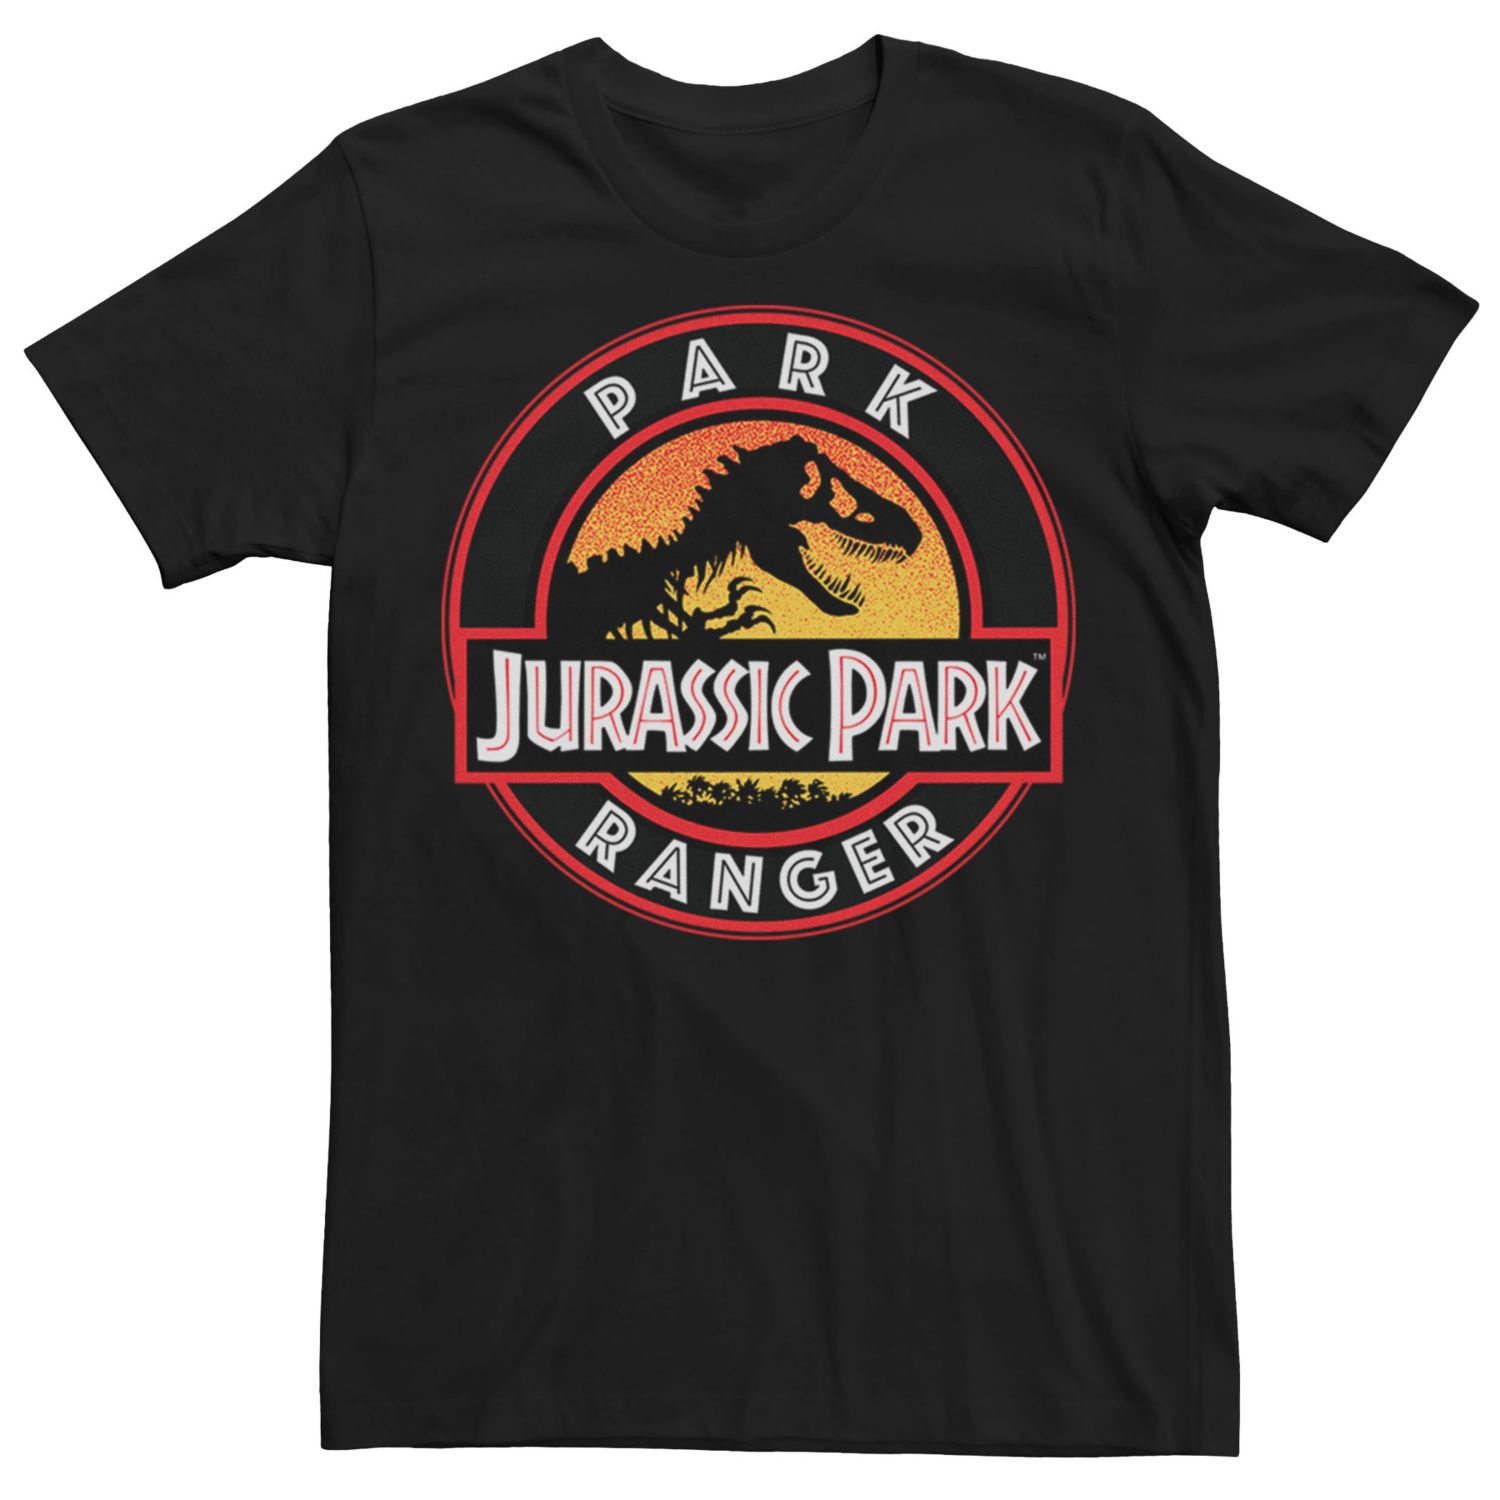 Image for Licensed Character Men's Jurassic Park Ranger Danger Tee at Kohl's.